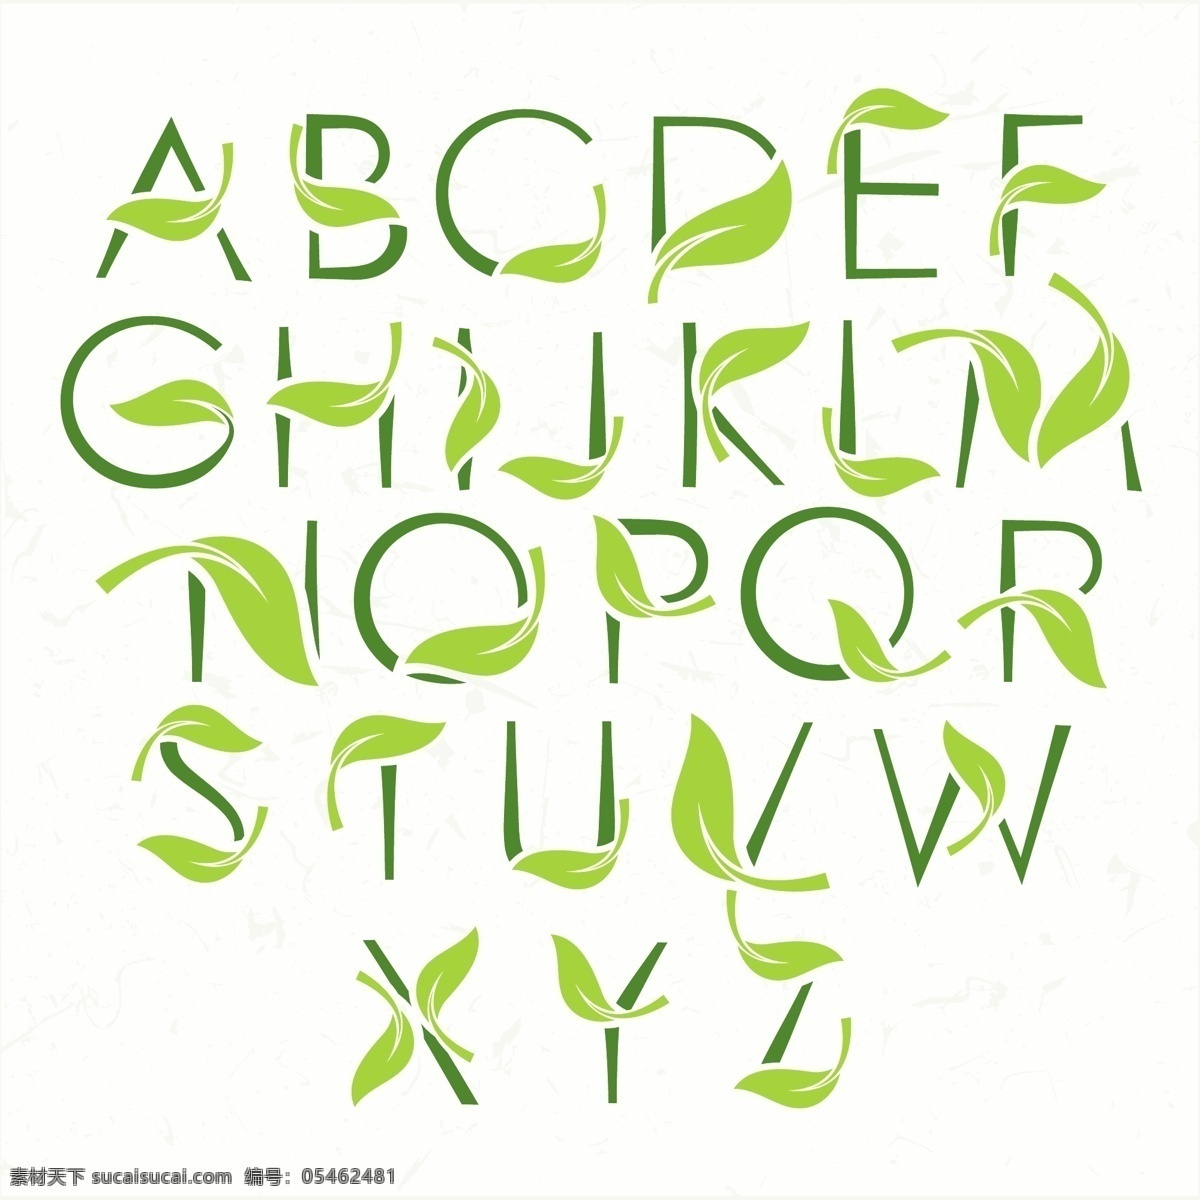 矢量 树叶 环保 字体 模板下载 英文 字母 字体设计 矢量字体 英文字体 书画文字 文化艺术 矢量素材 白色